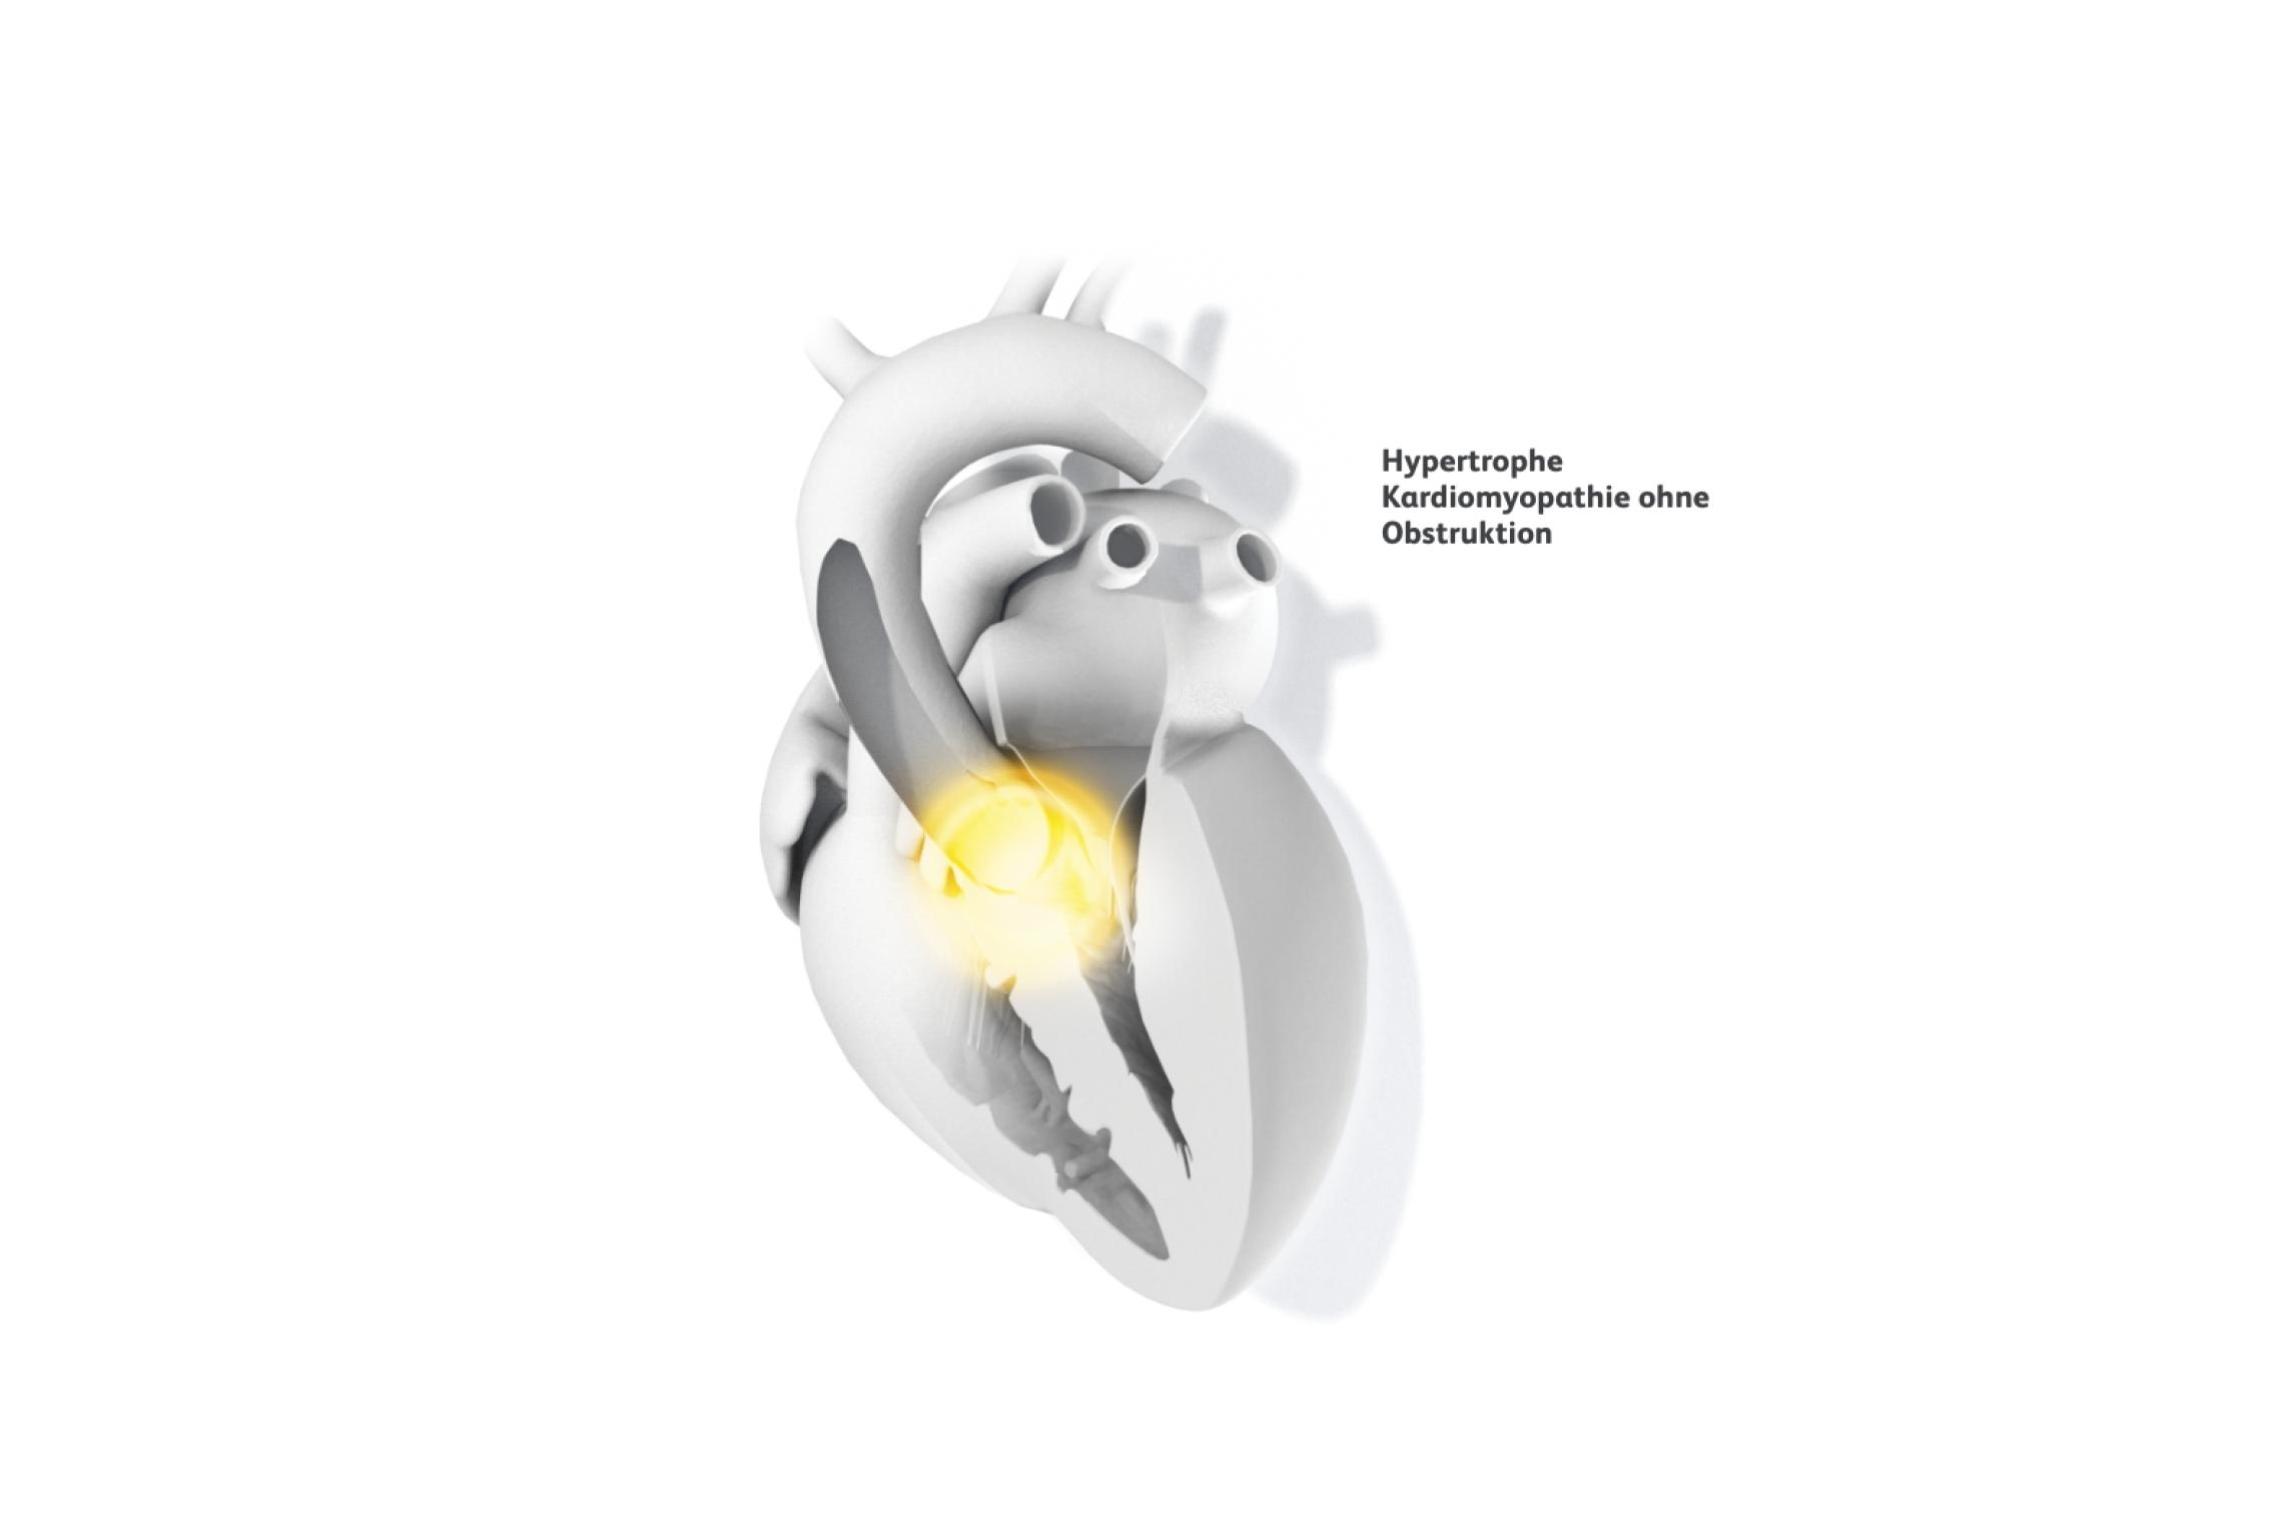 medizinische Illustration Herzen mit hypertropher Kardiomyopathie ohne Obstruktion